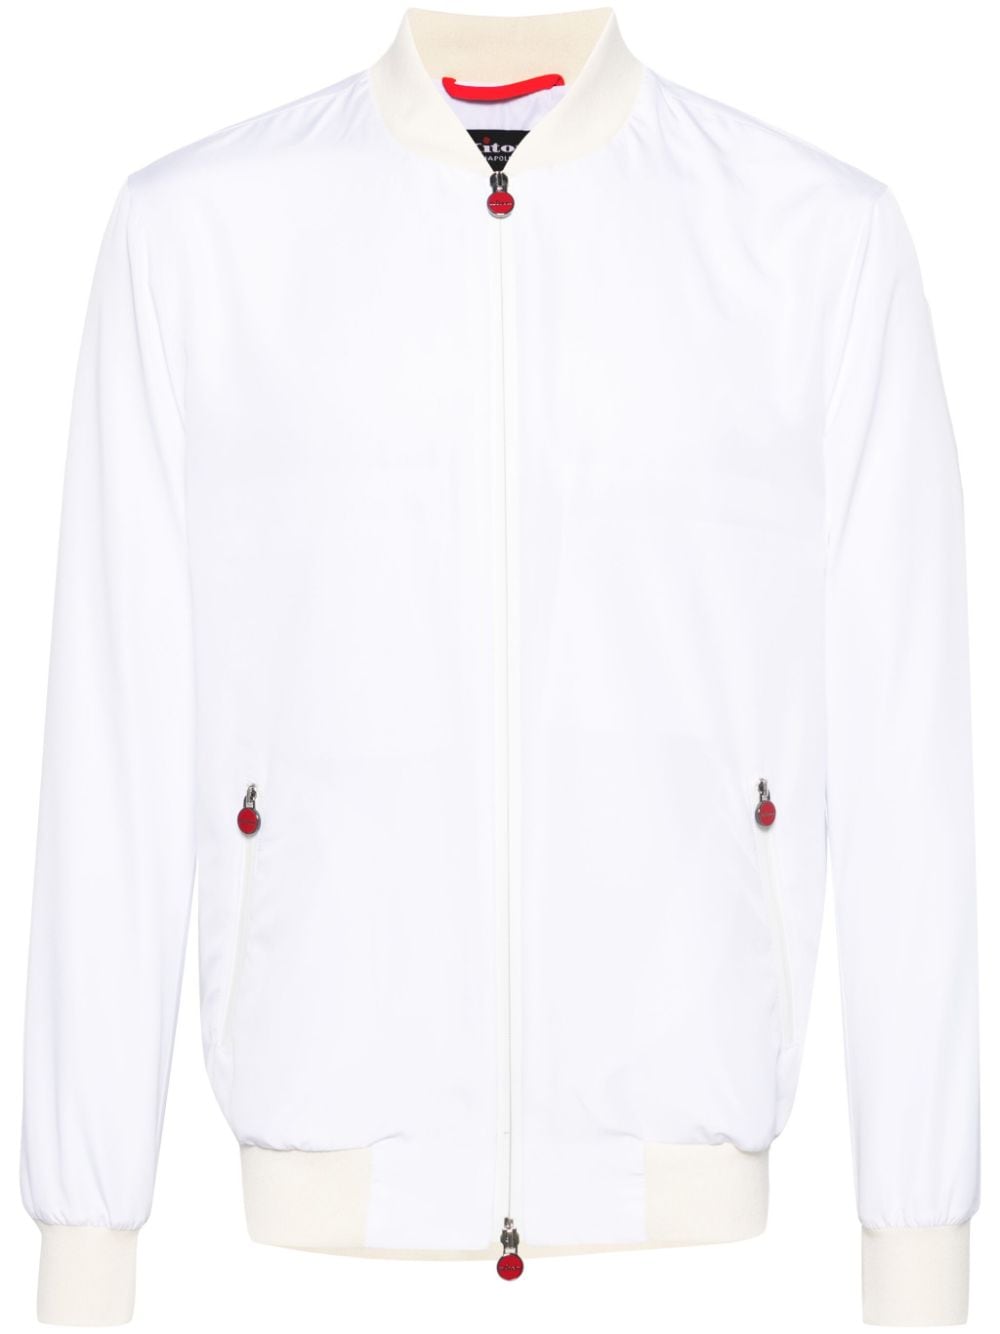 Áo khoác bomber nam màu trắng - thiết kế đơn giản, cổ áo có rãnh đường may, khóa kéo hai chiều